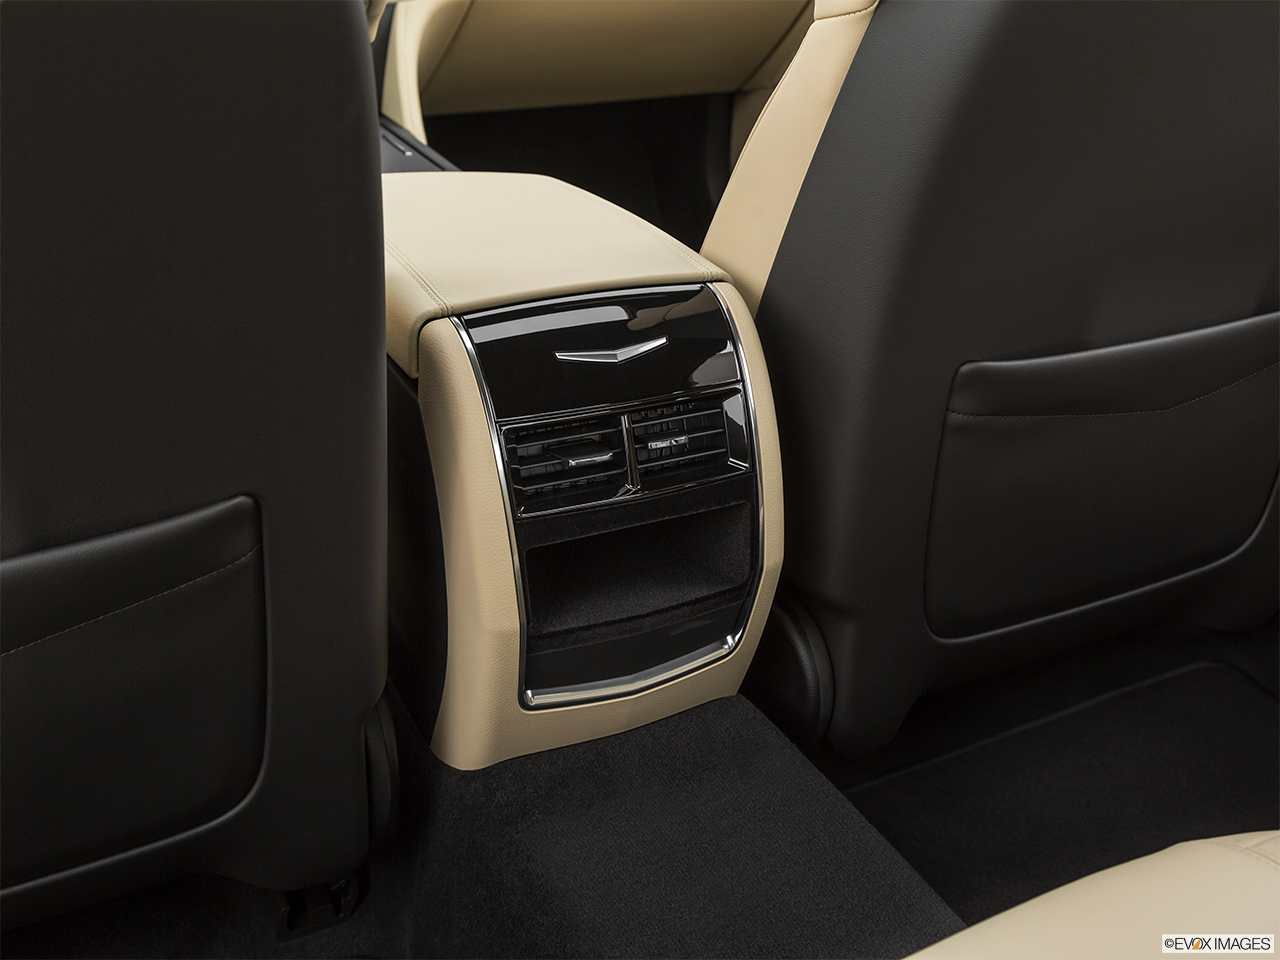 2020 Cadillac CT6 Luxury Rear A/C controls. 